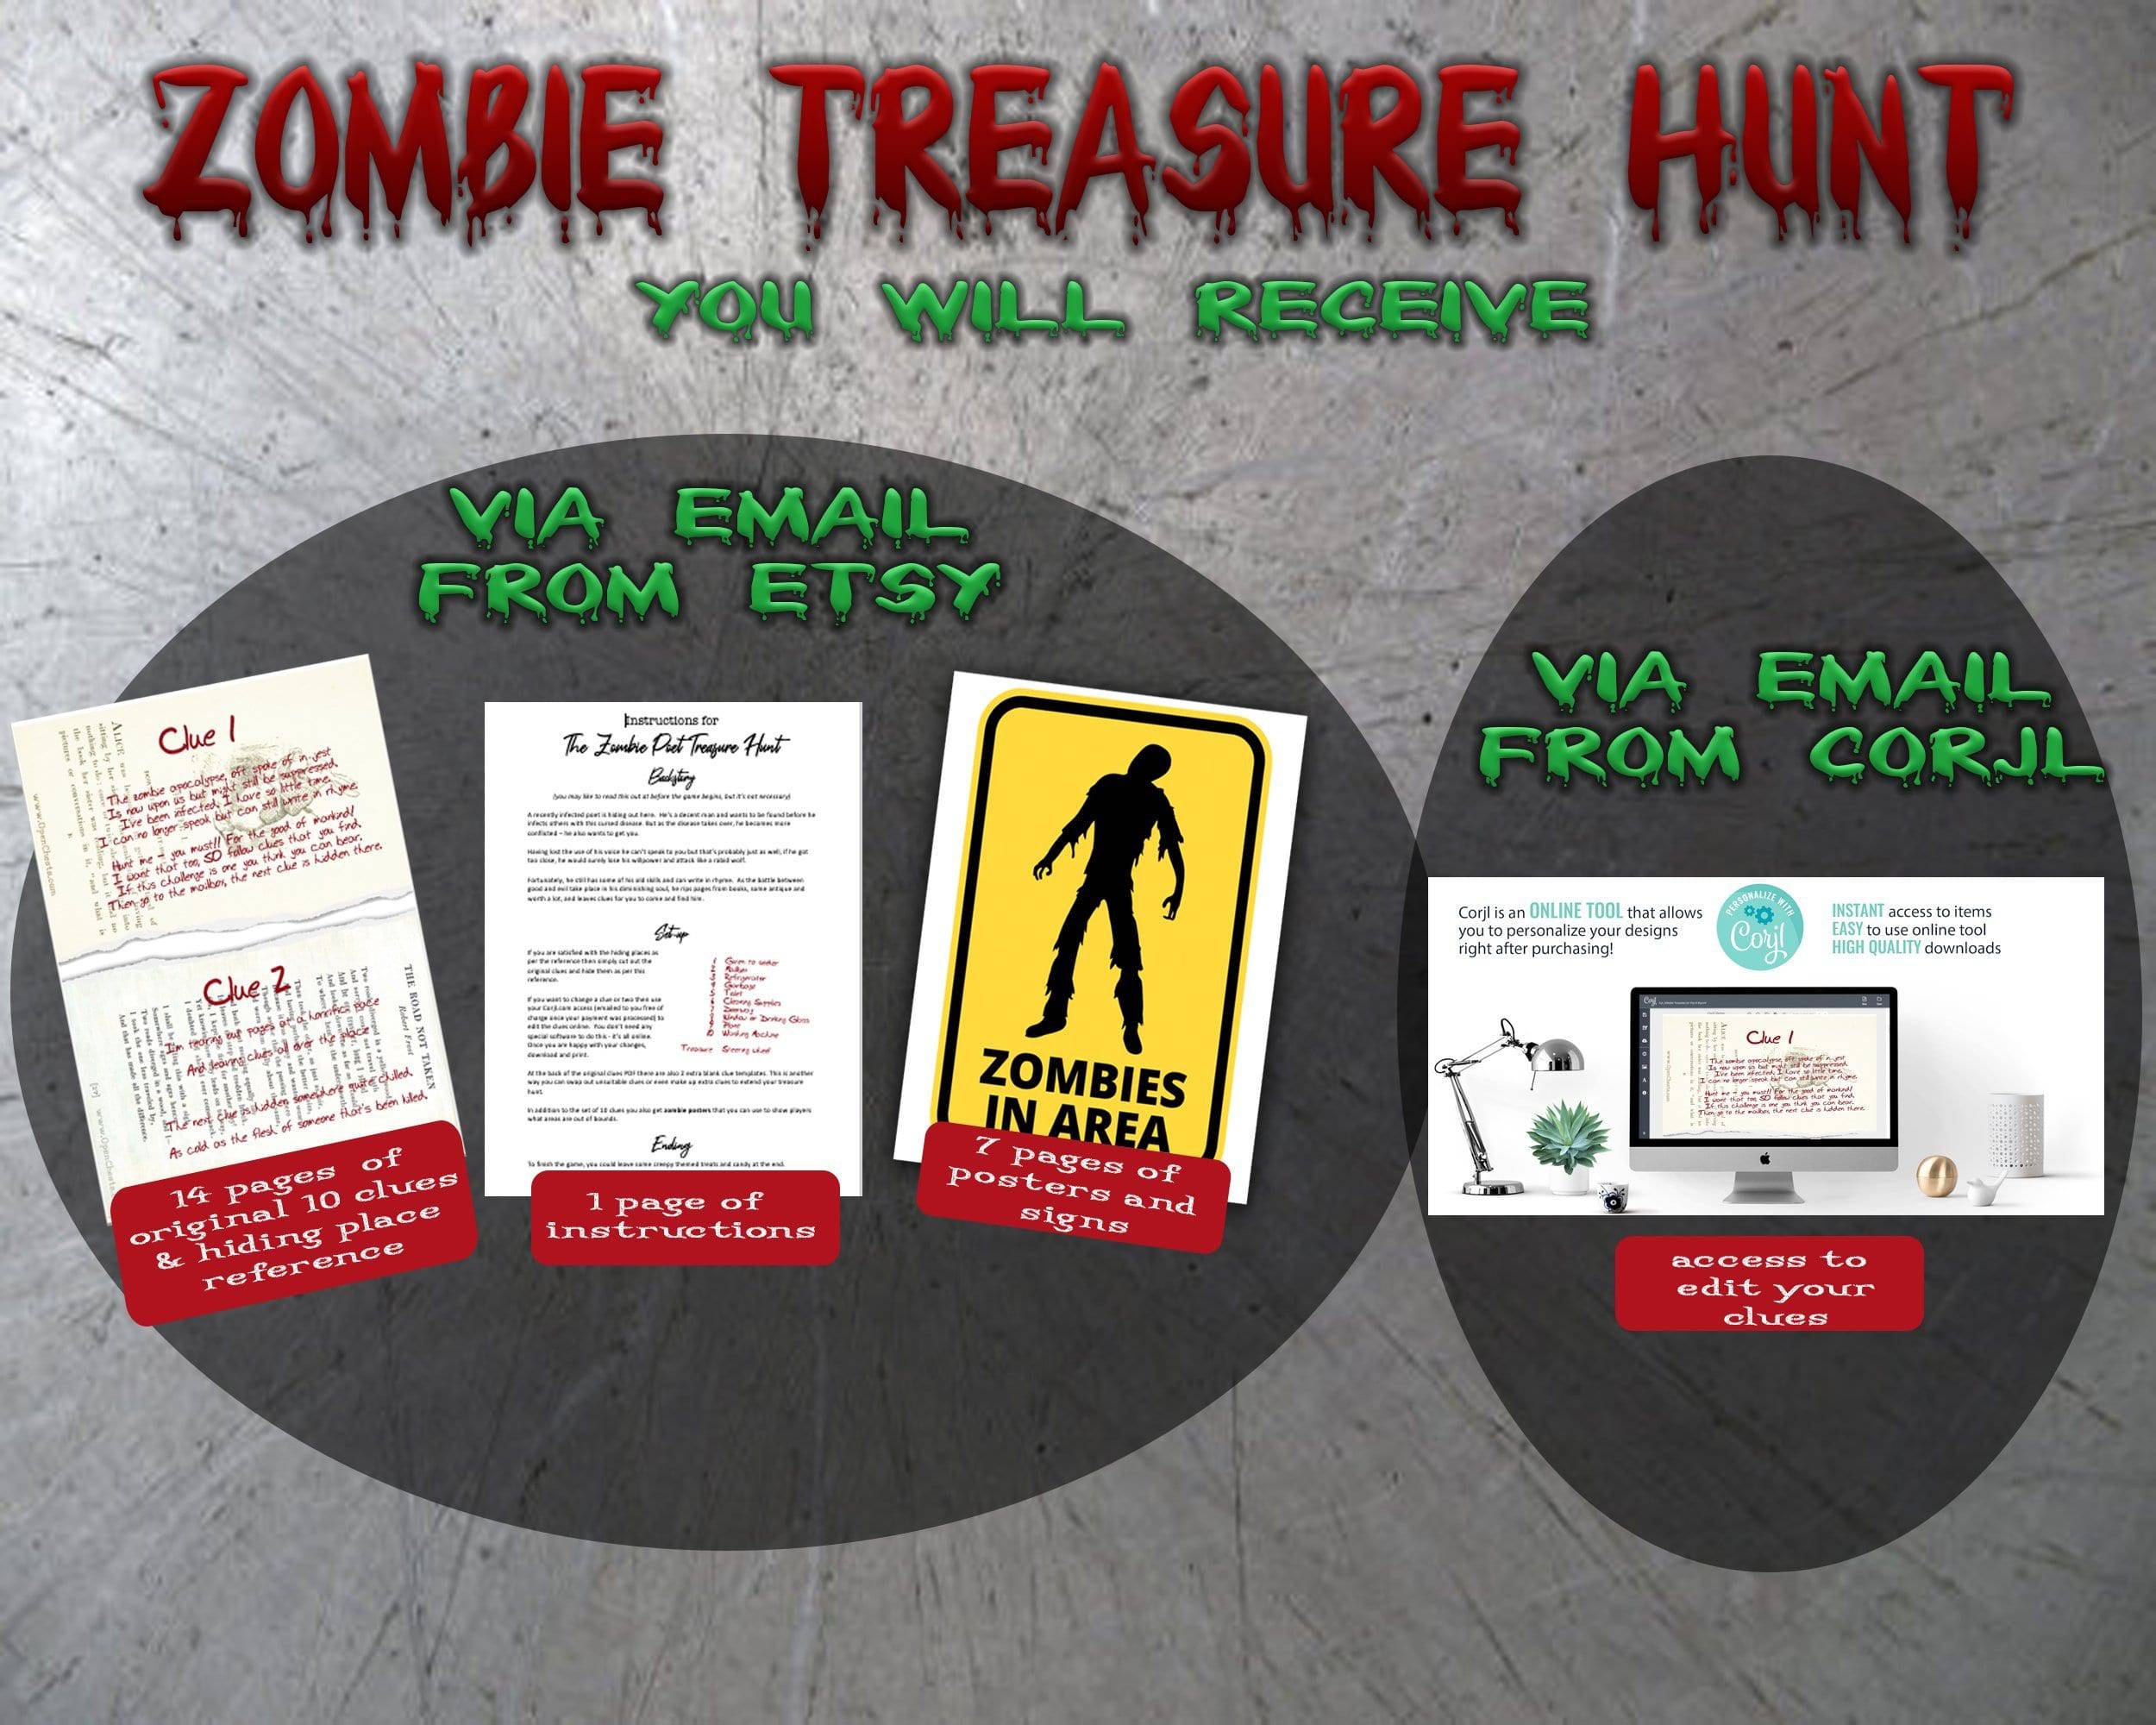 Creepy Treasure Hunt Clues - Zombie Poet - Open Chests